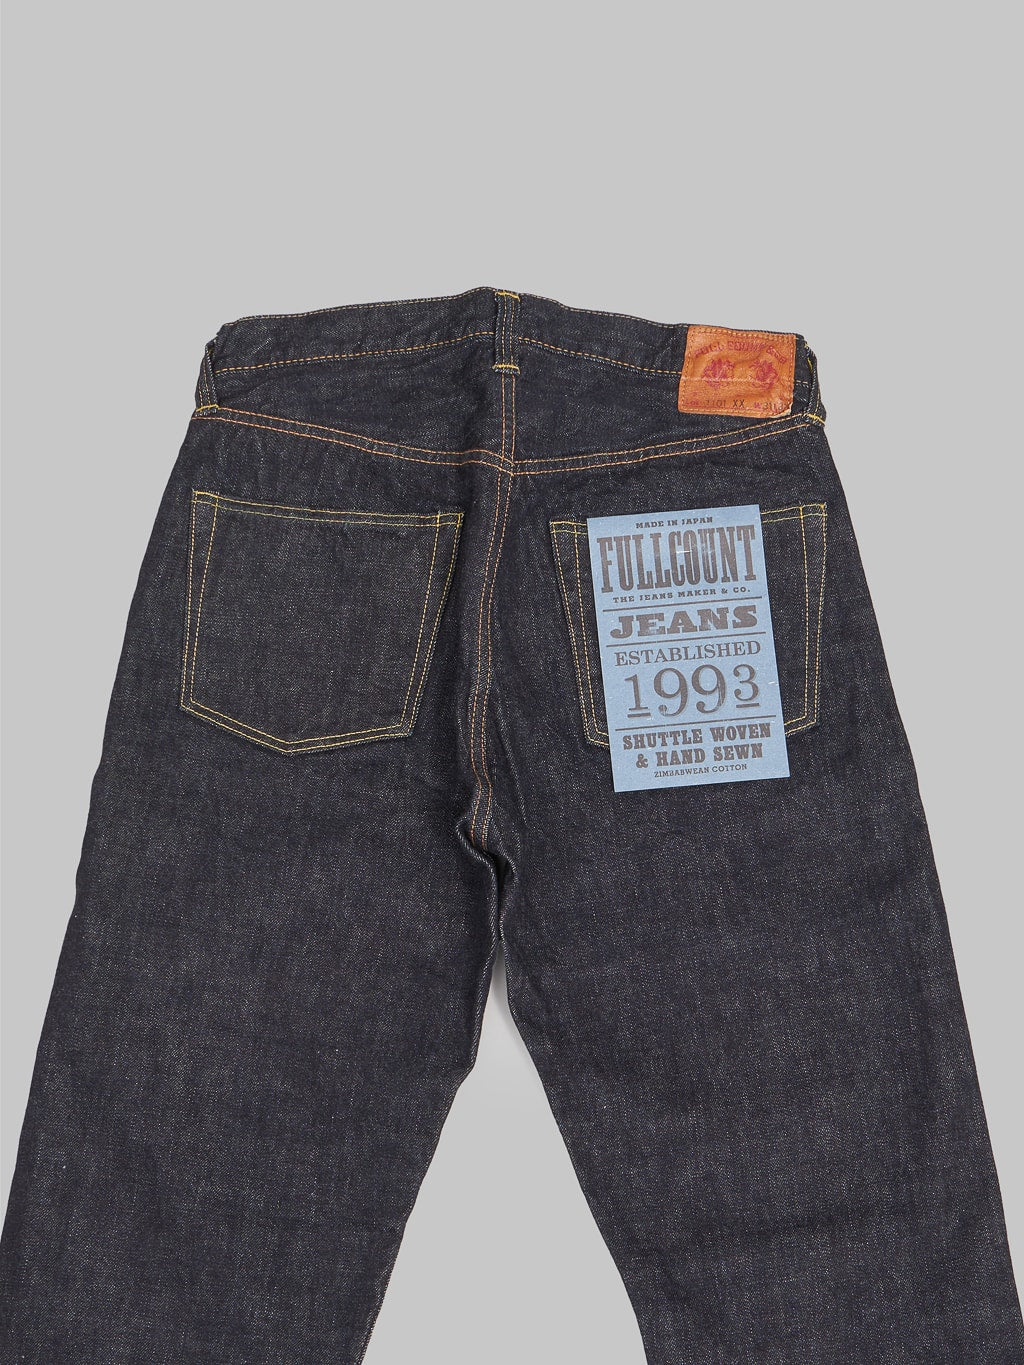 Fullcount 1101XXW regular Straight selvedge Jeans back details